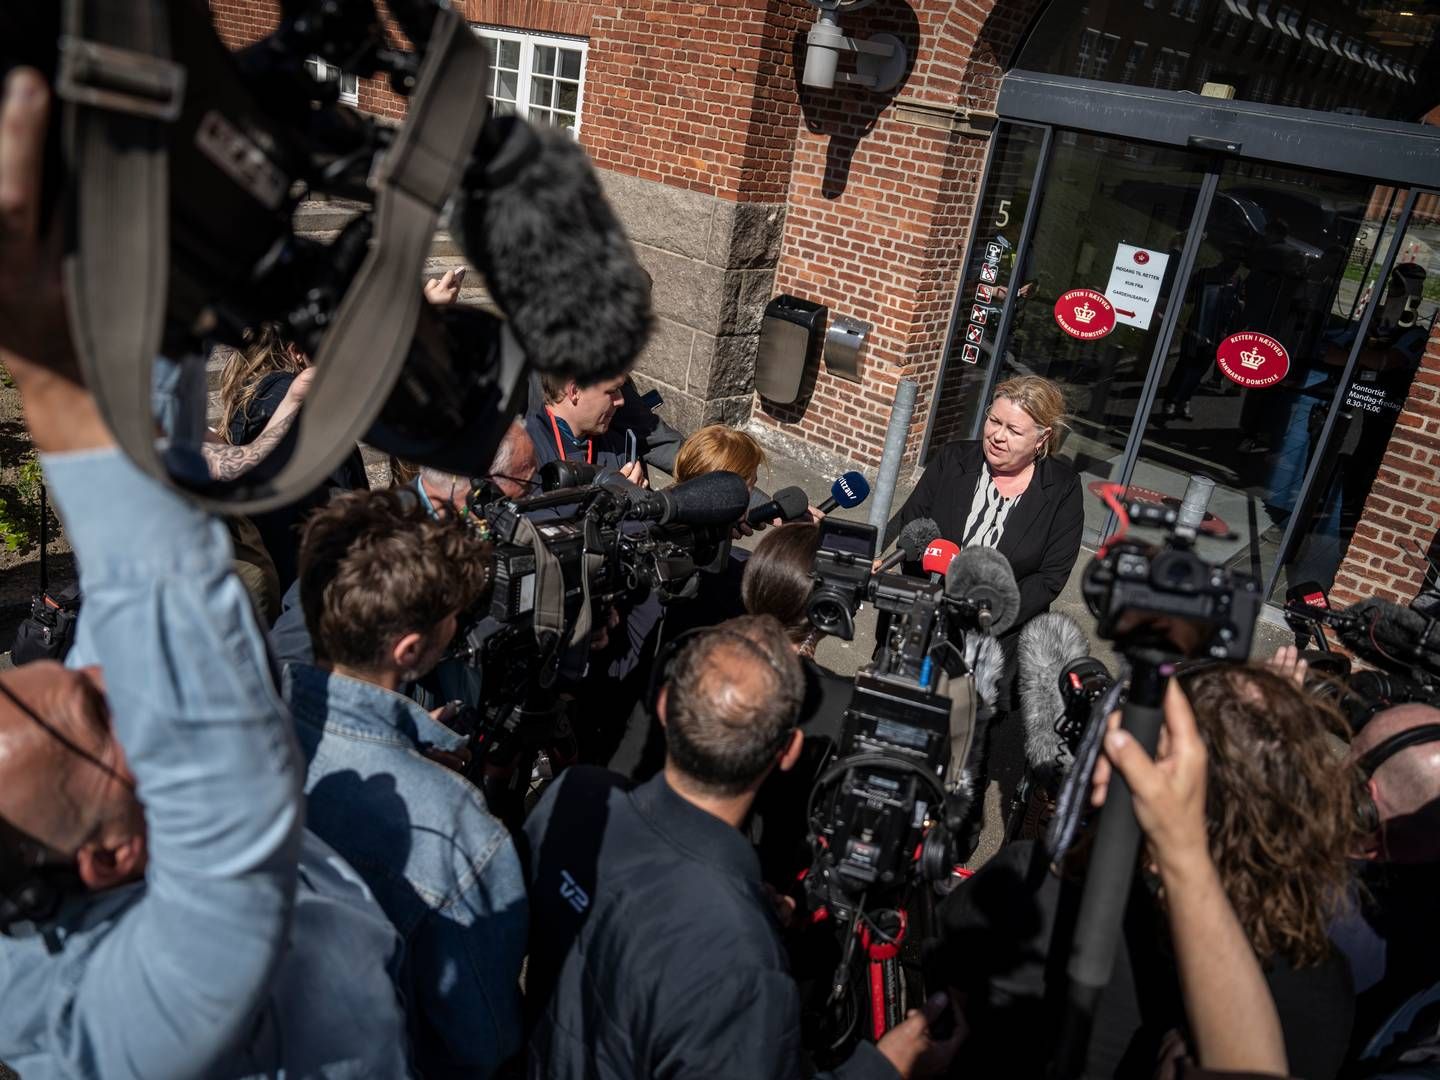 Den verserende sag ved Retten i Næstved bliver dækket massivt af medierne. Her møder specialanklager Susanne Bluhm pressen efter retssagens første dag. | Photo: Mads Claus Rasmussen/Ritzau Scanpix